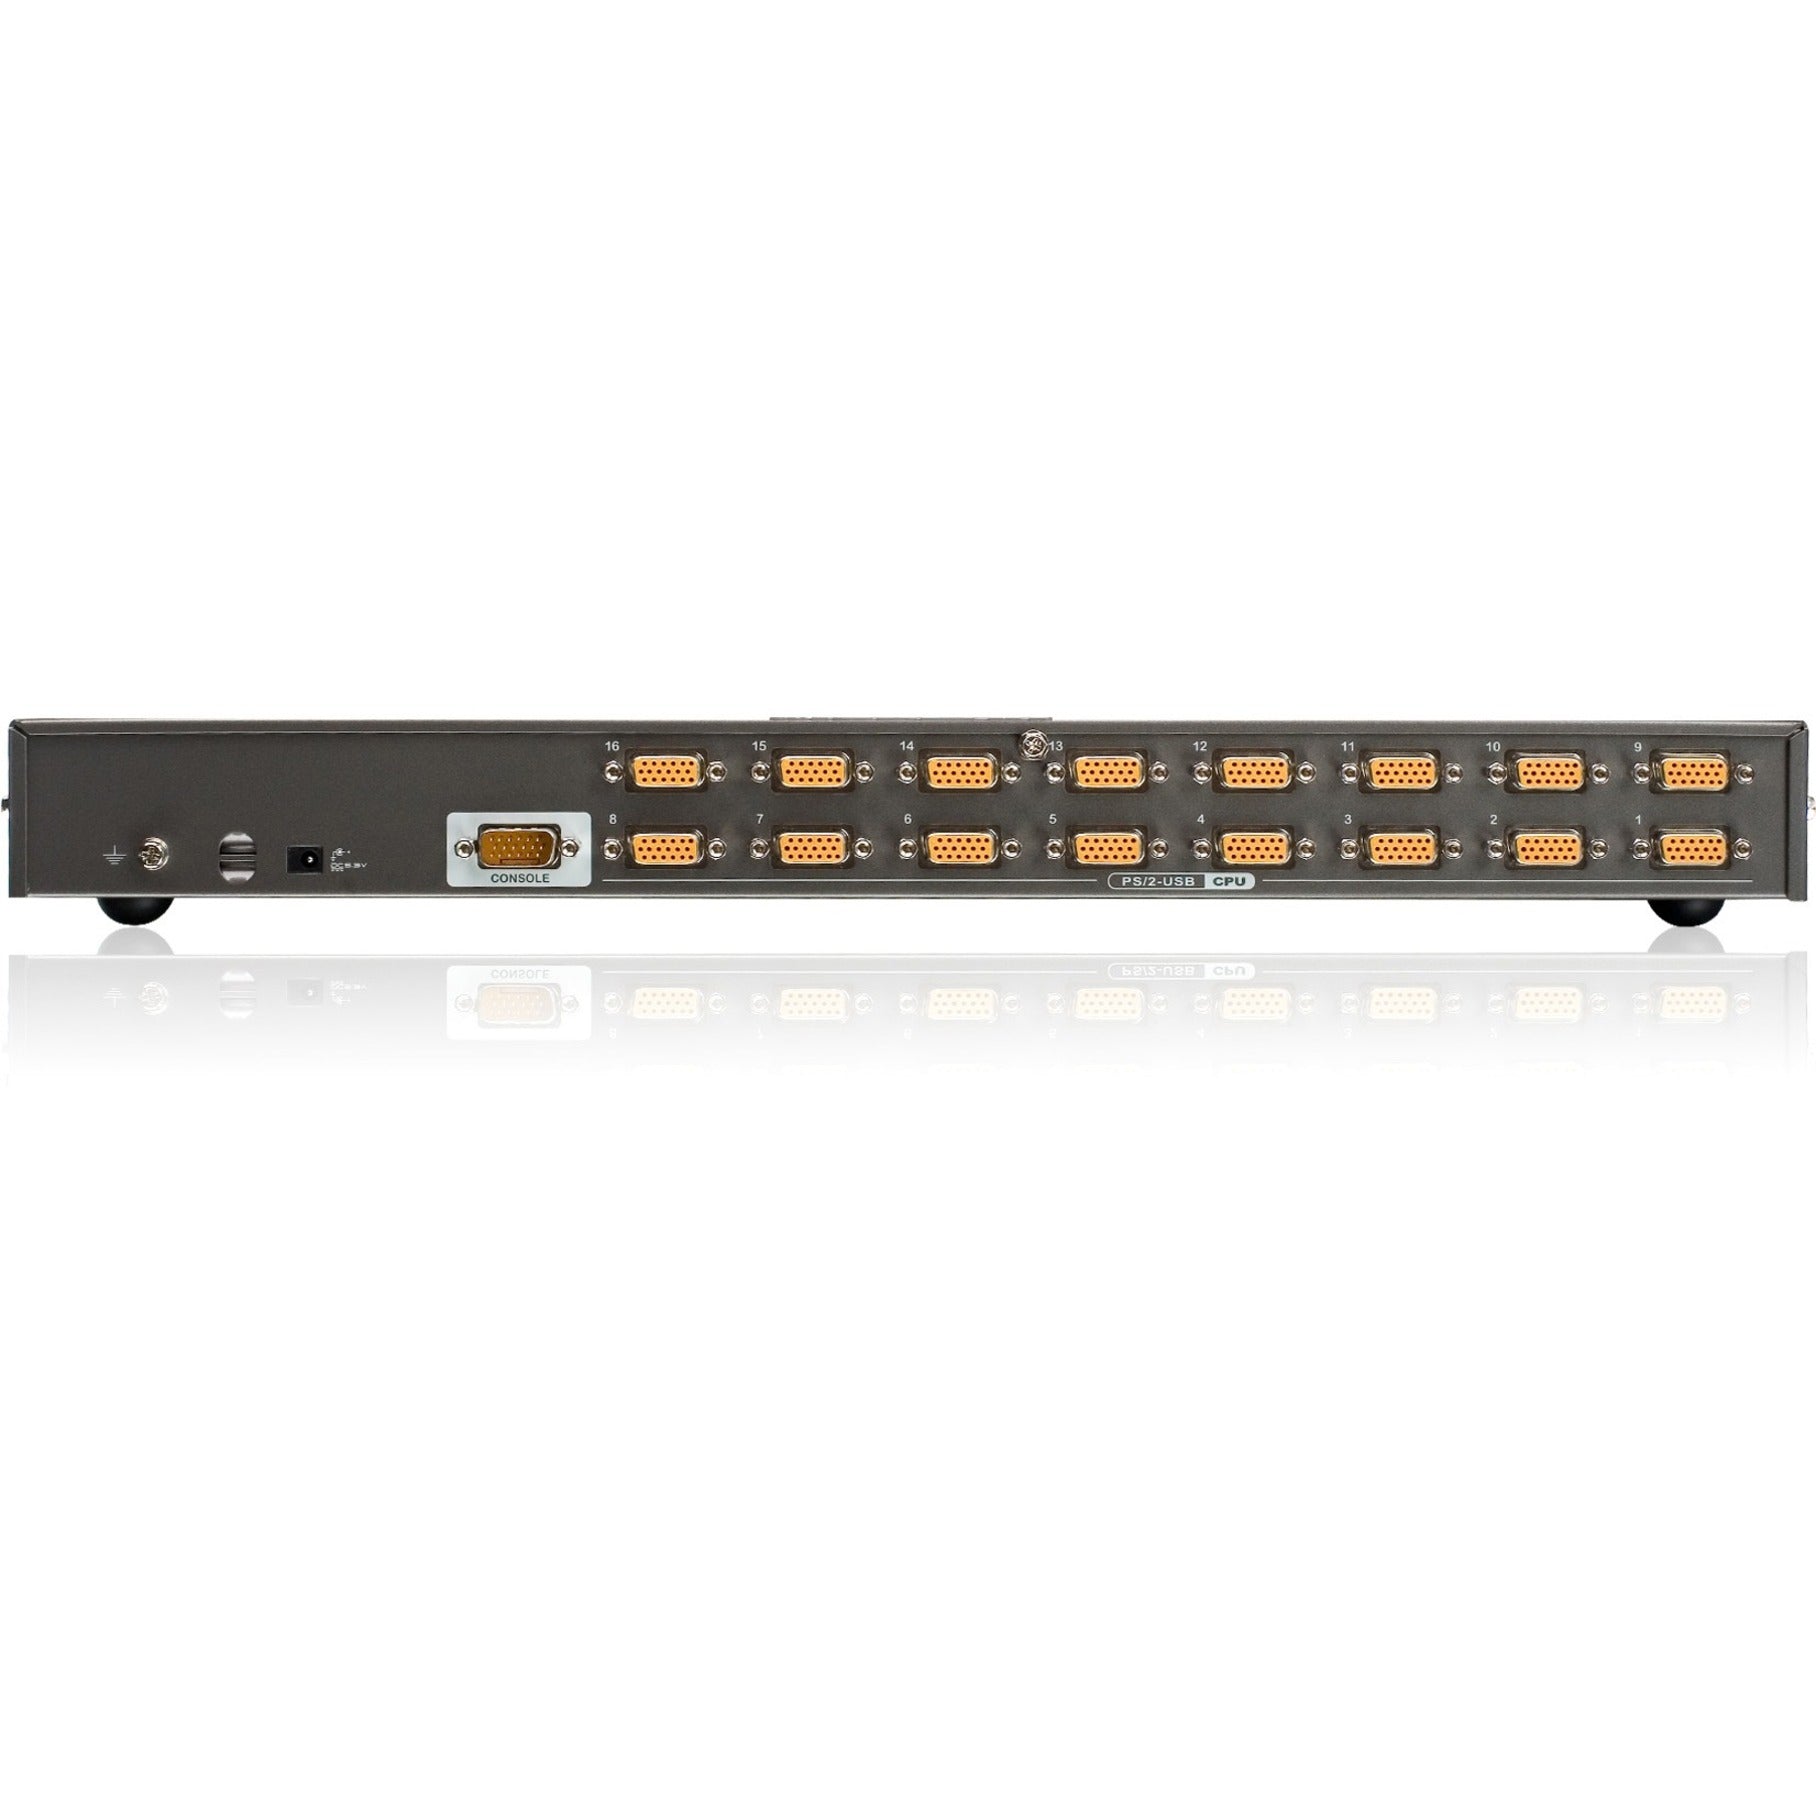 IOGEAR GCS1716 16-Port USB PS/2 コンボ KVM スイッチ、QXGA、2048 x 1536、3年保証、エネルギースター、TAA コンプライアント、ラックマウント可能